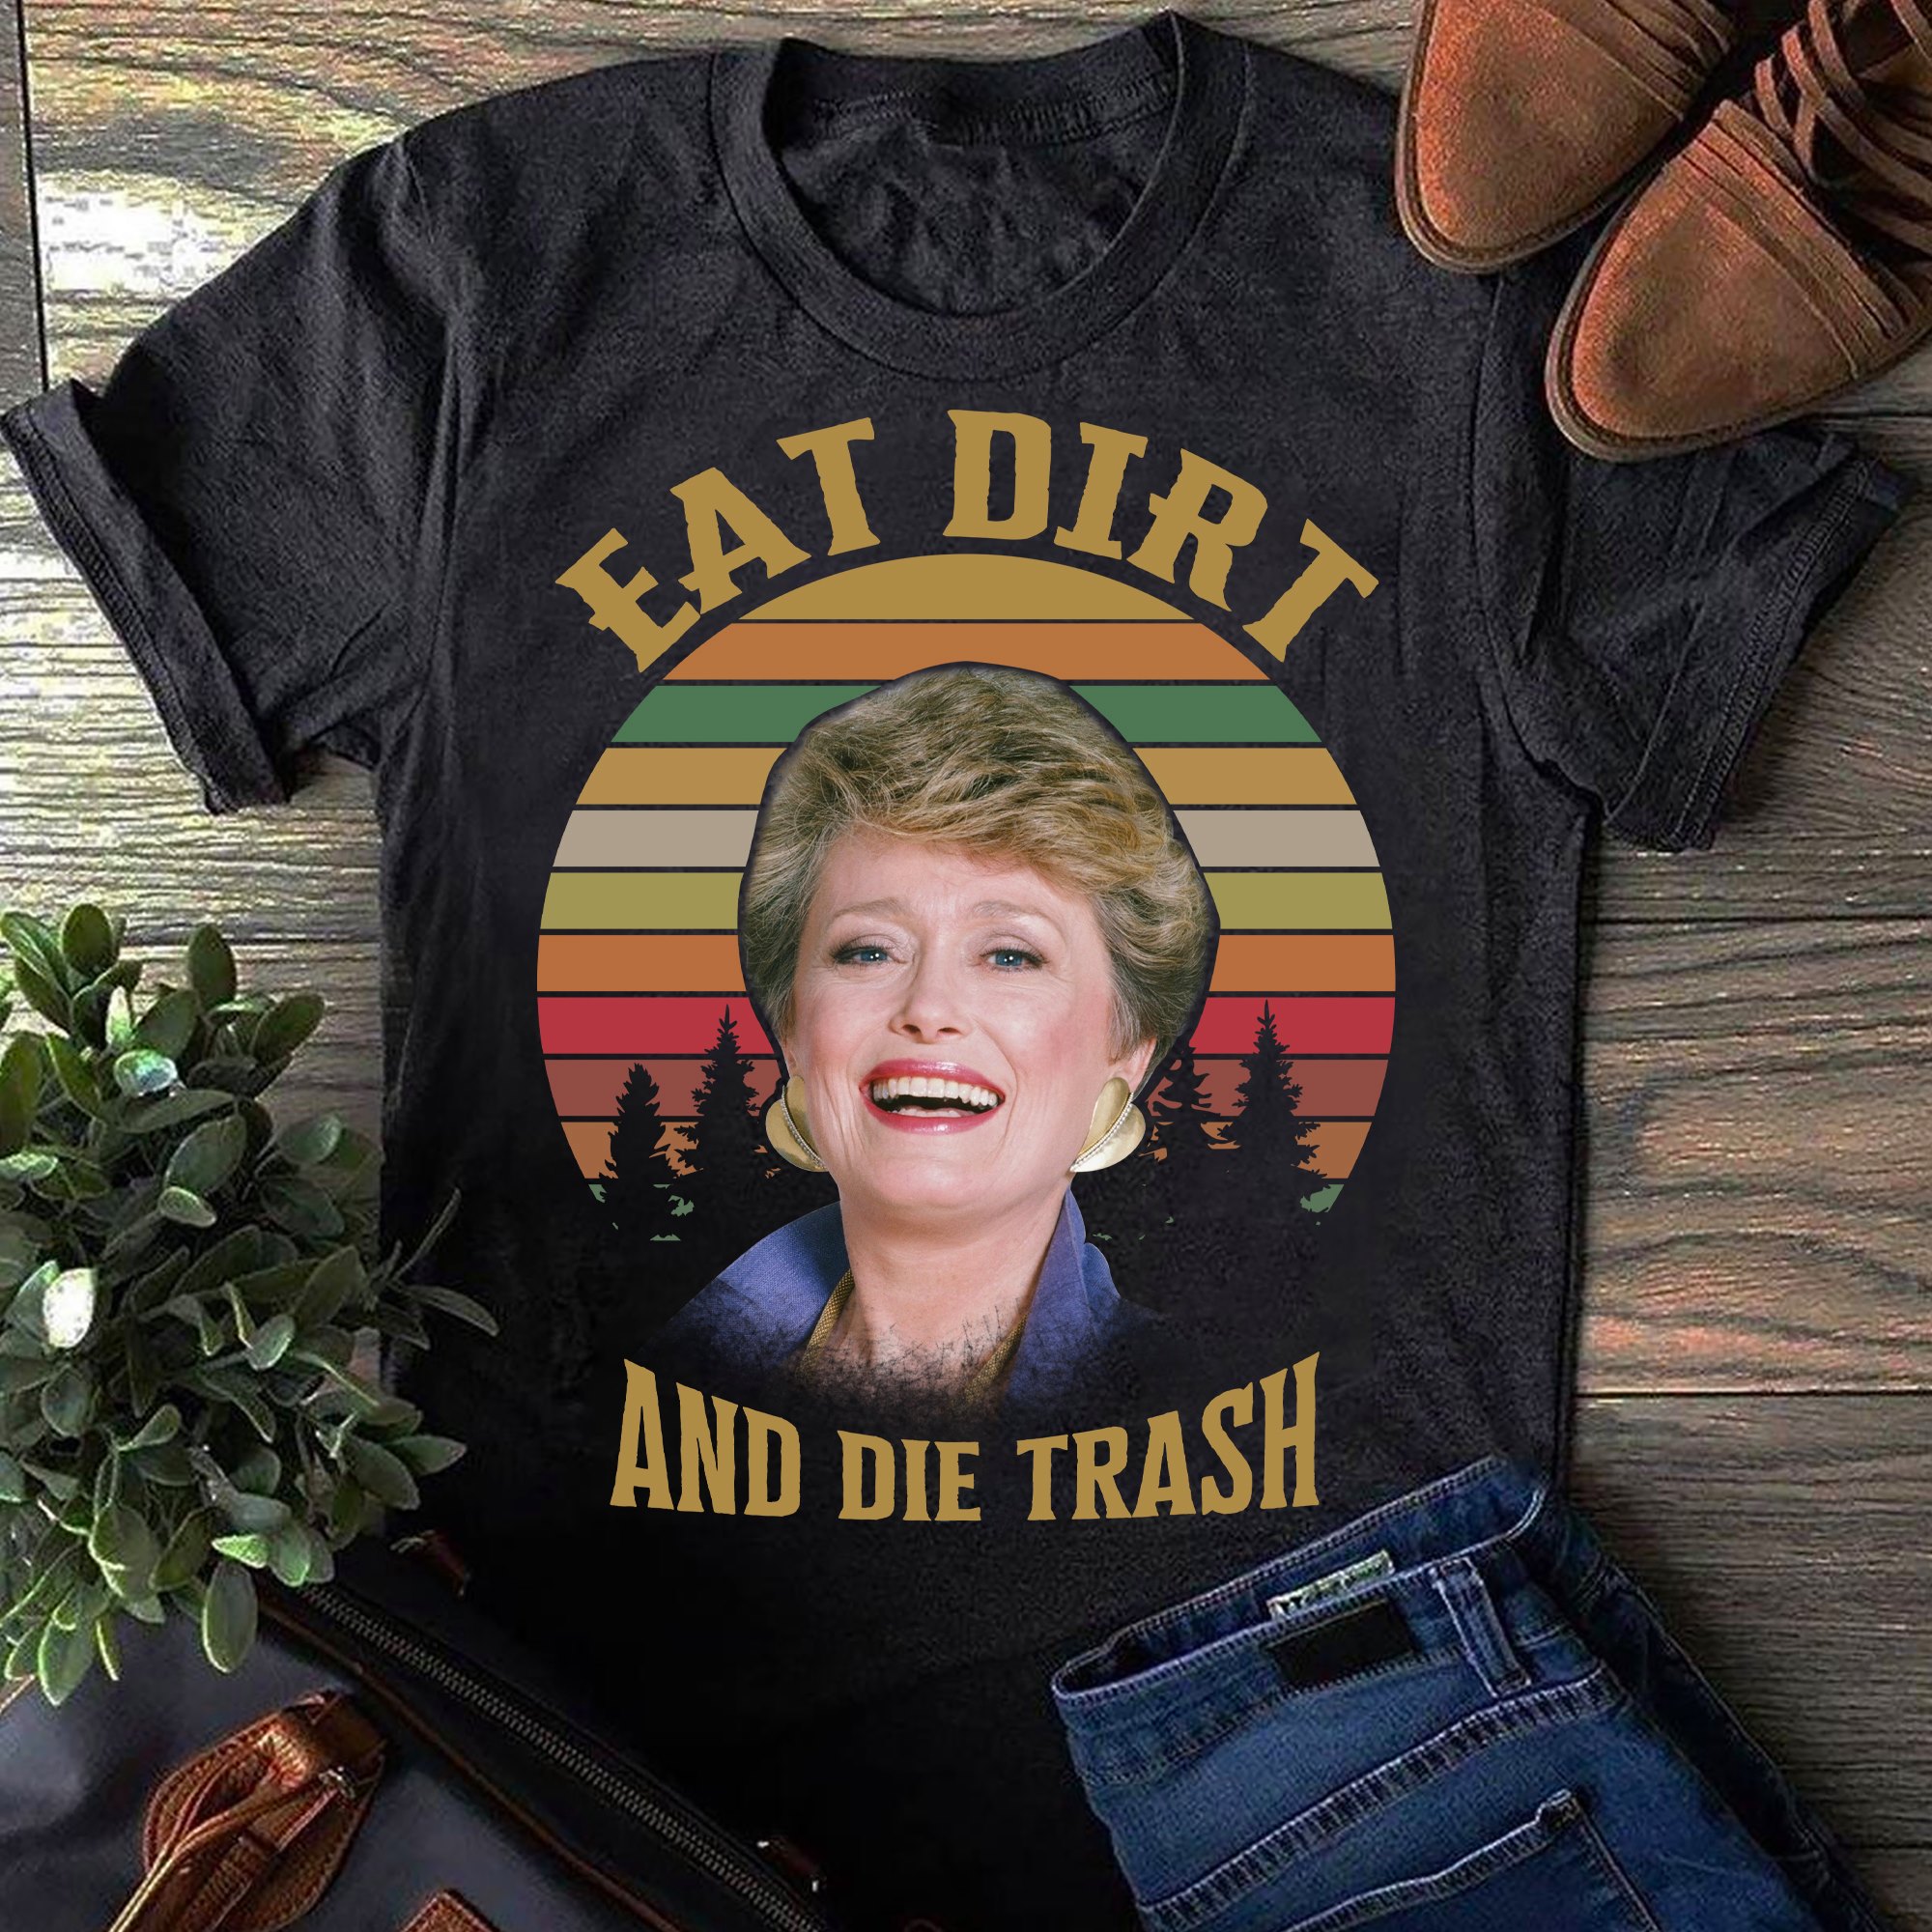 Eat dirt and die trash